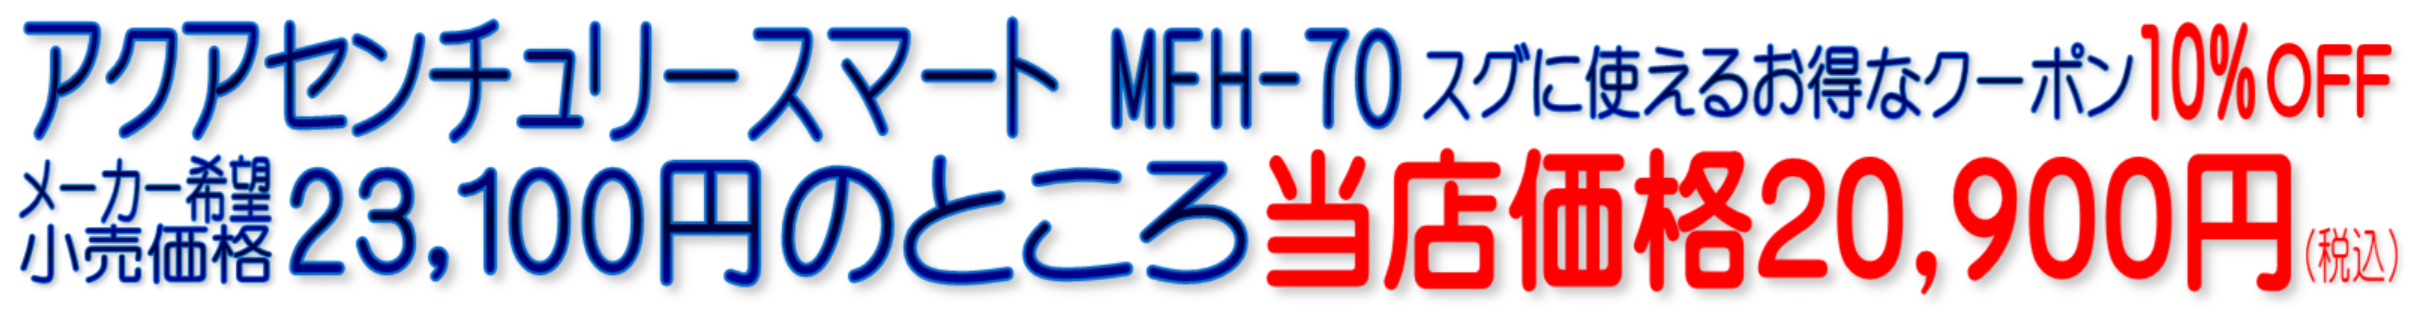 MFH-70